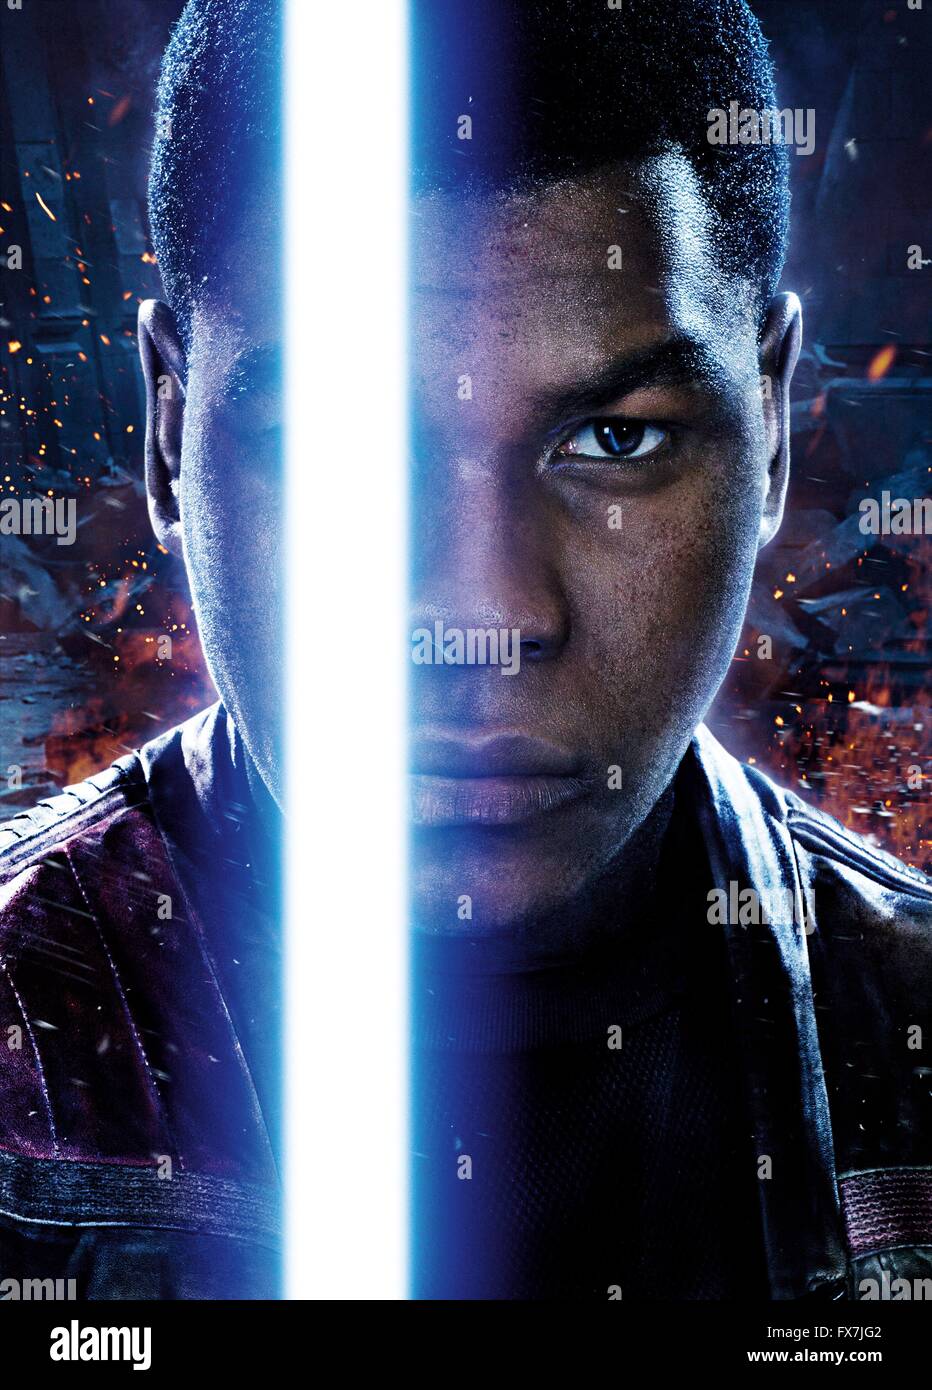 Star Wars: Episode VII - The Force Awakens Year : 2015 USA Director : J.J. Abrams John Boyega Movie poster (Art Work) Stock Photo